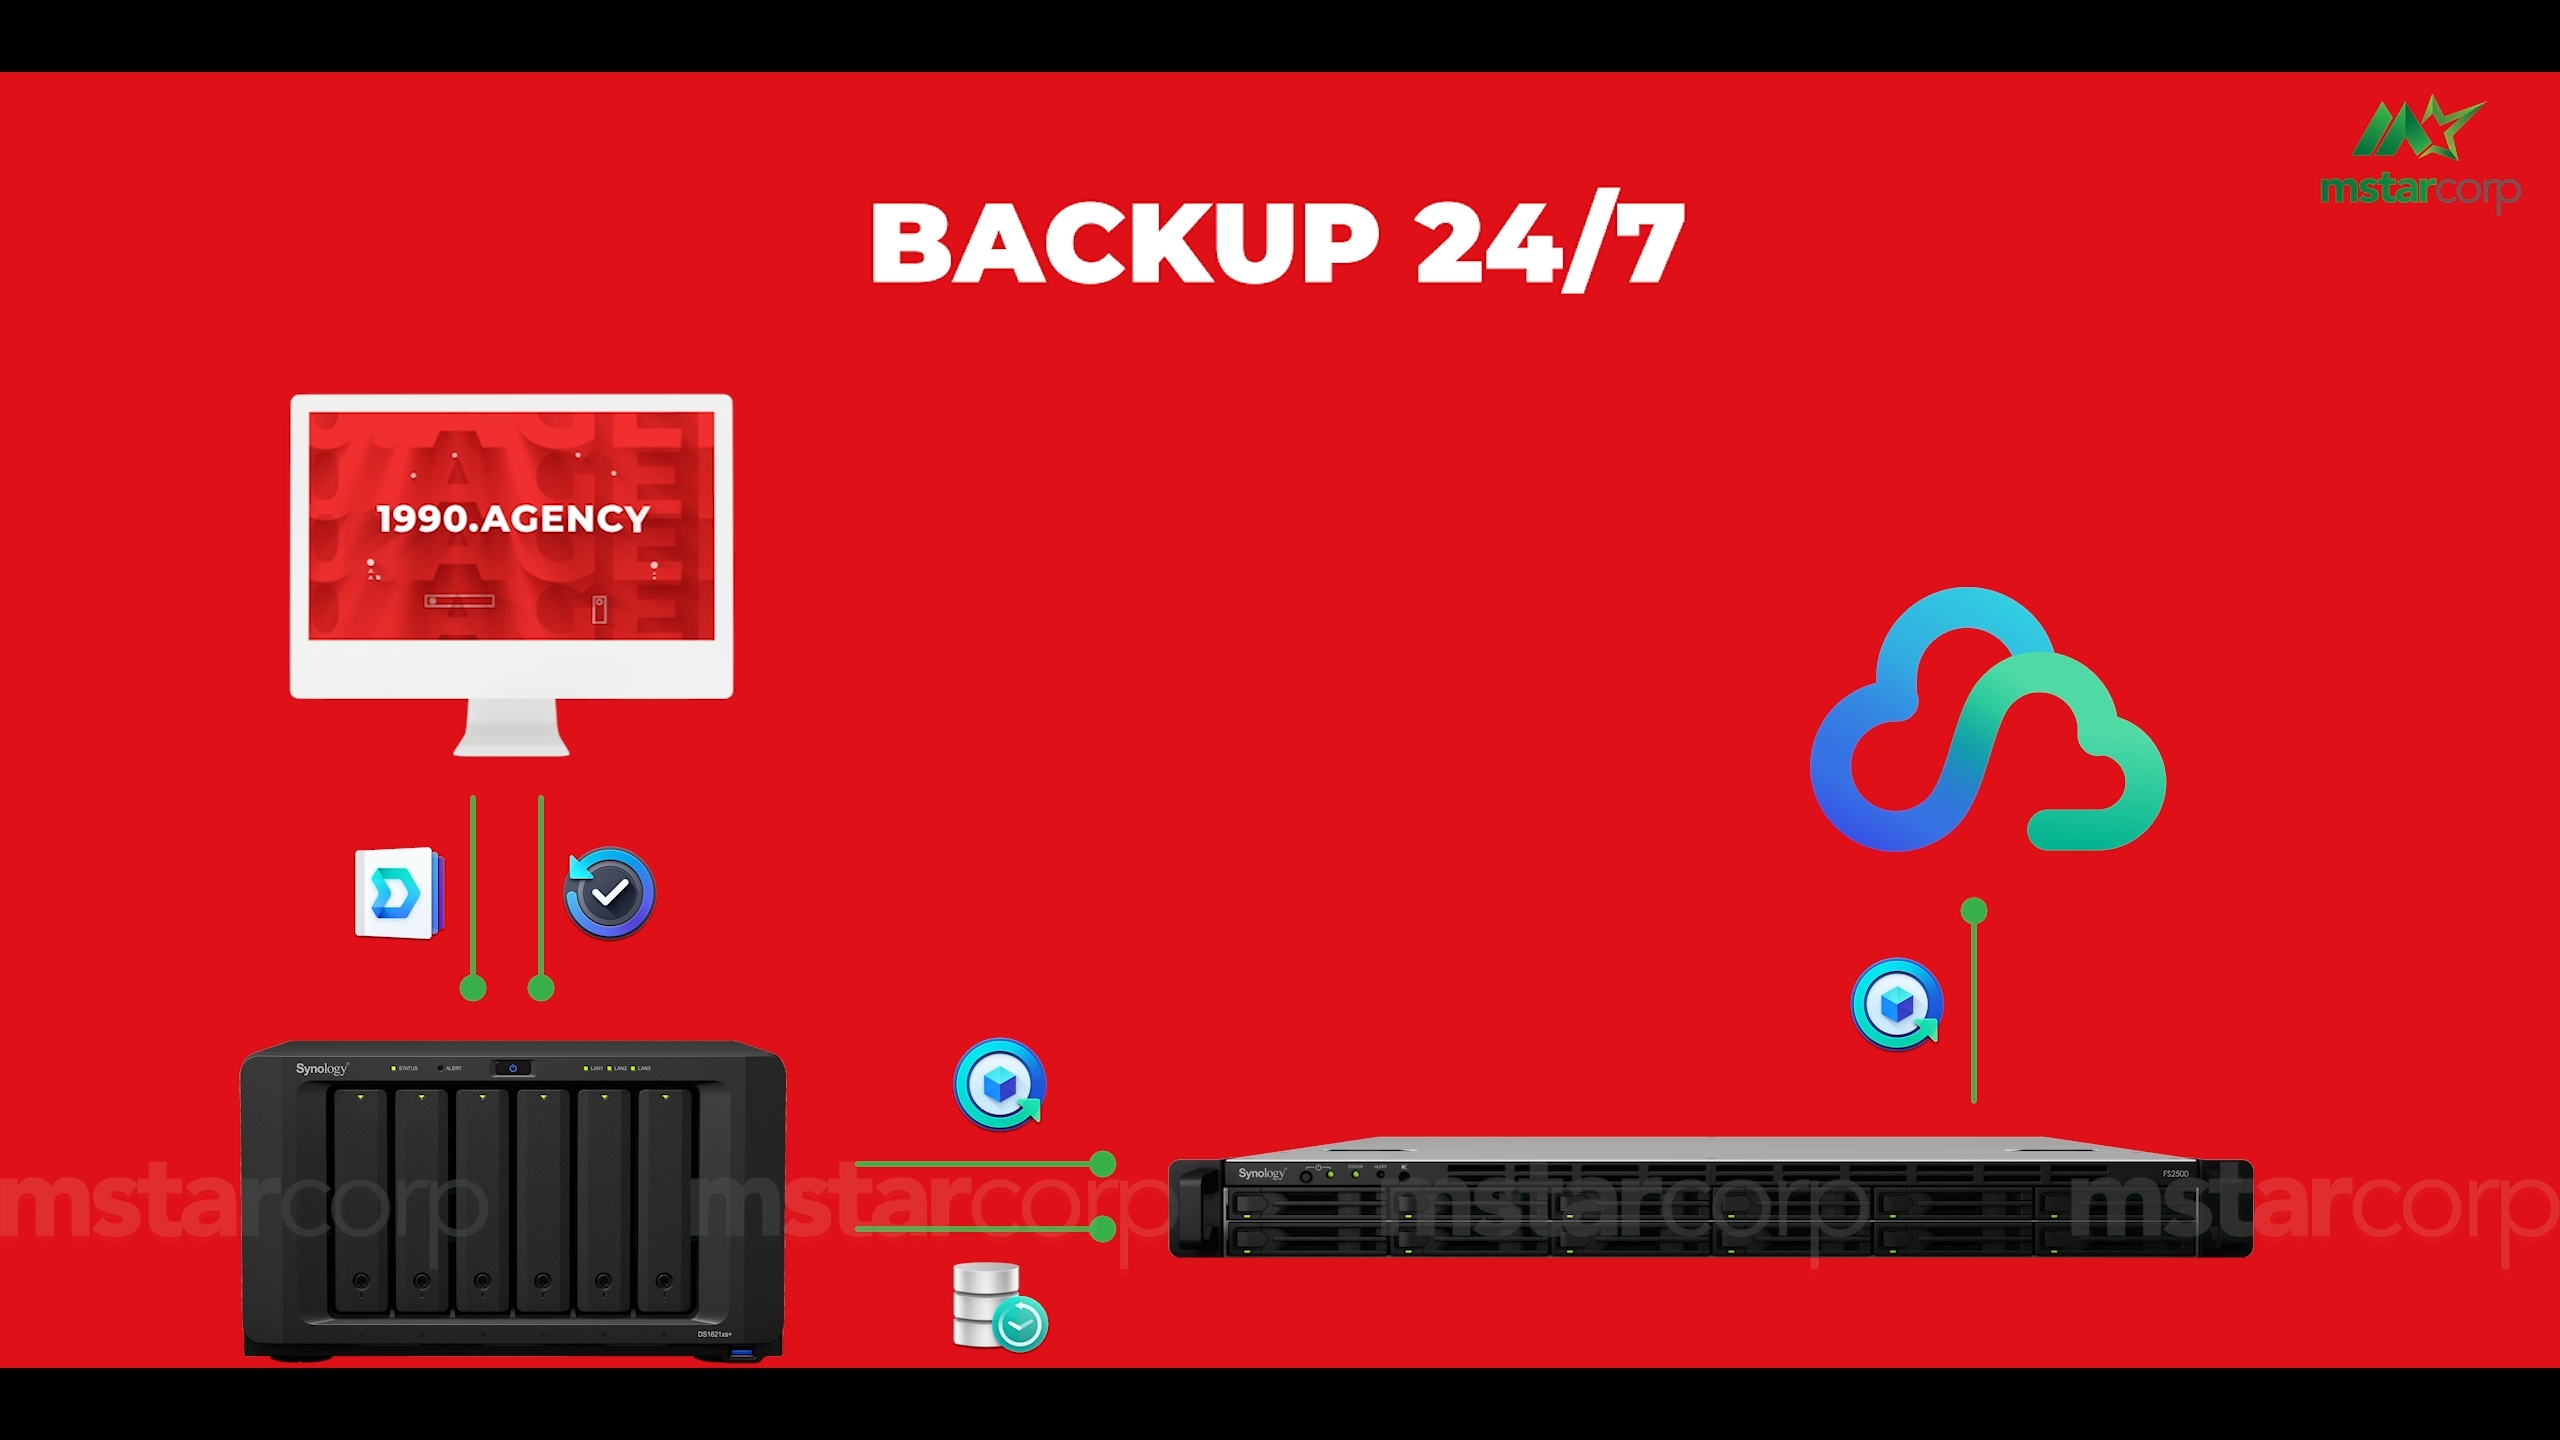 Chiến lược backup 3-2-1 giúp backup 24/7, bảo vệ dữ liệu lên đến 99%